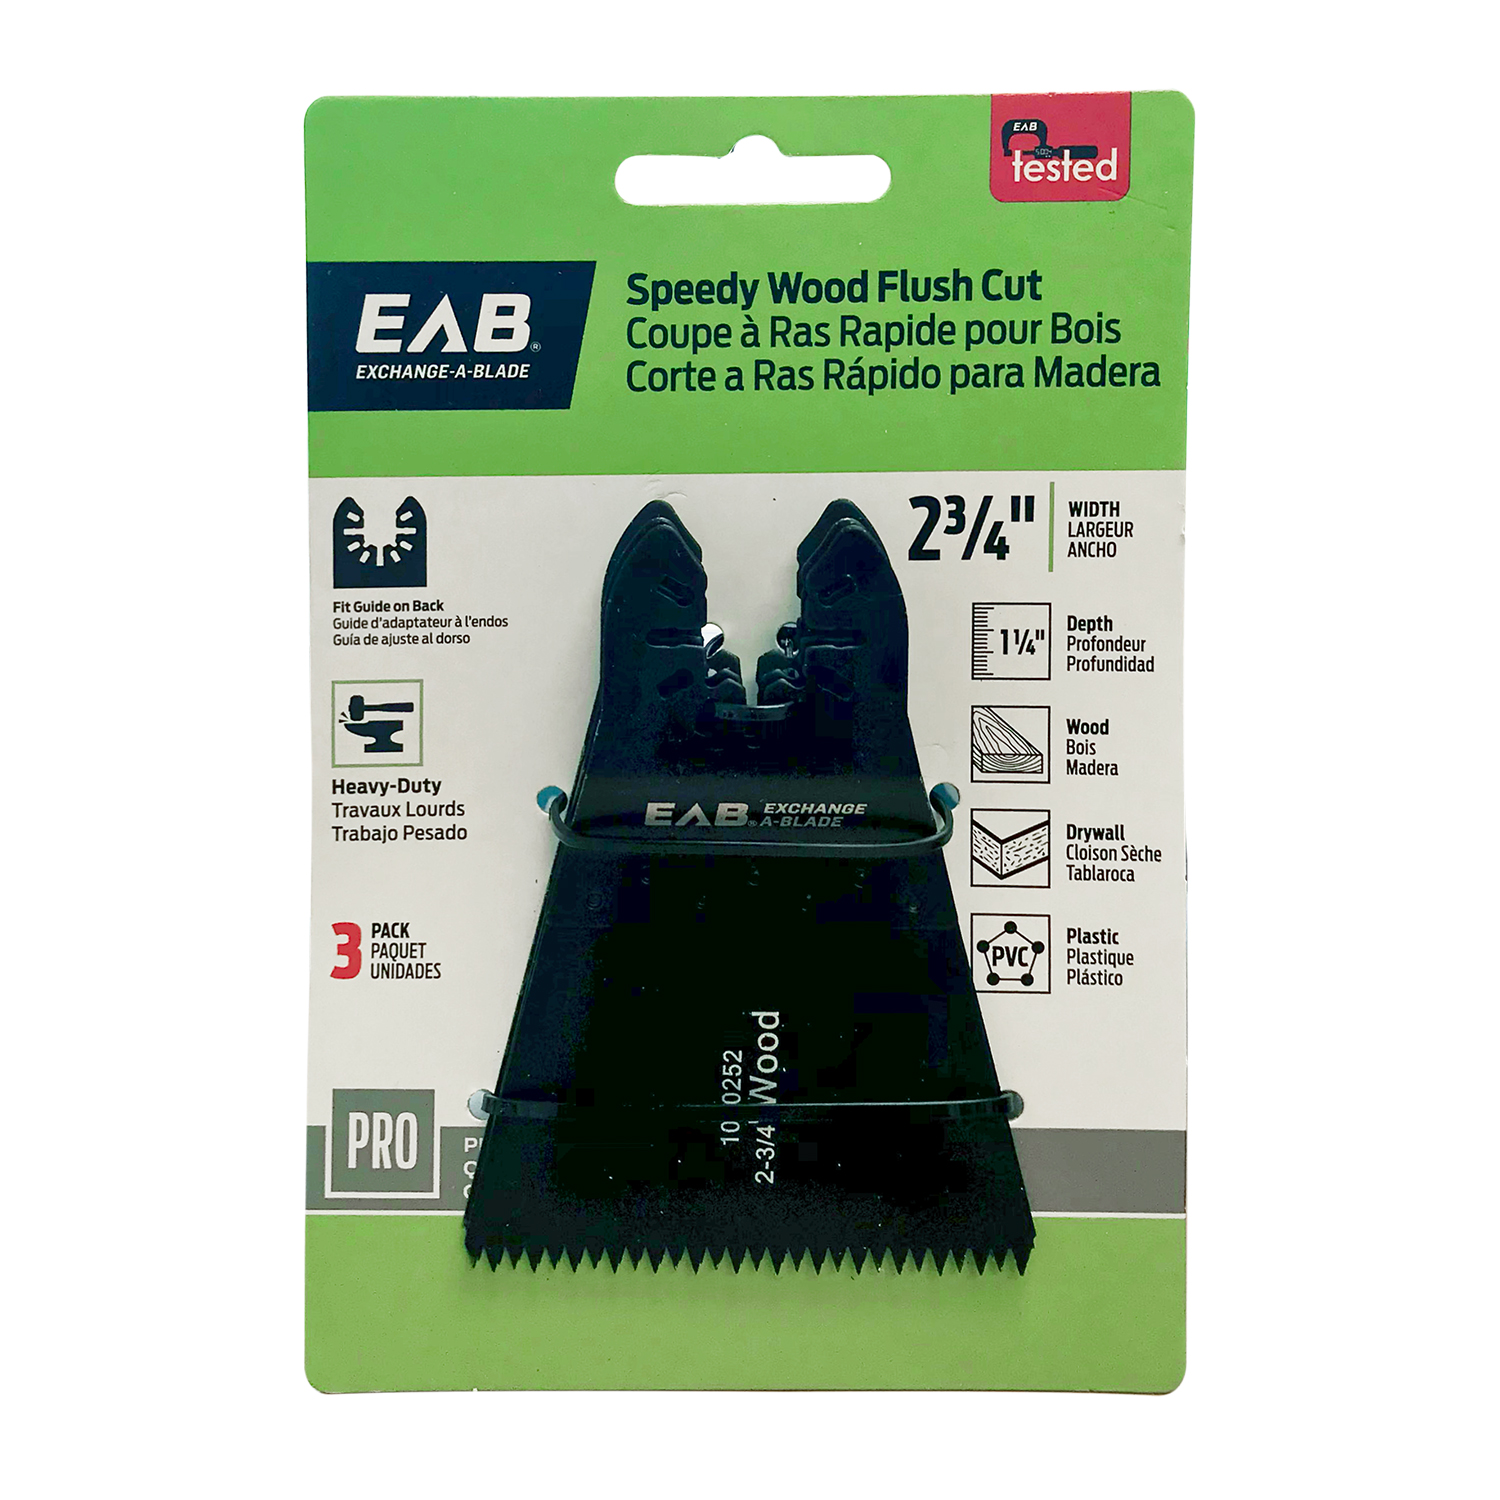 EAB (1070492) packaging